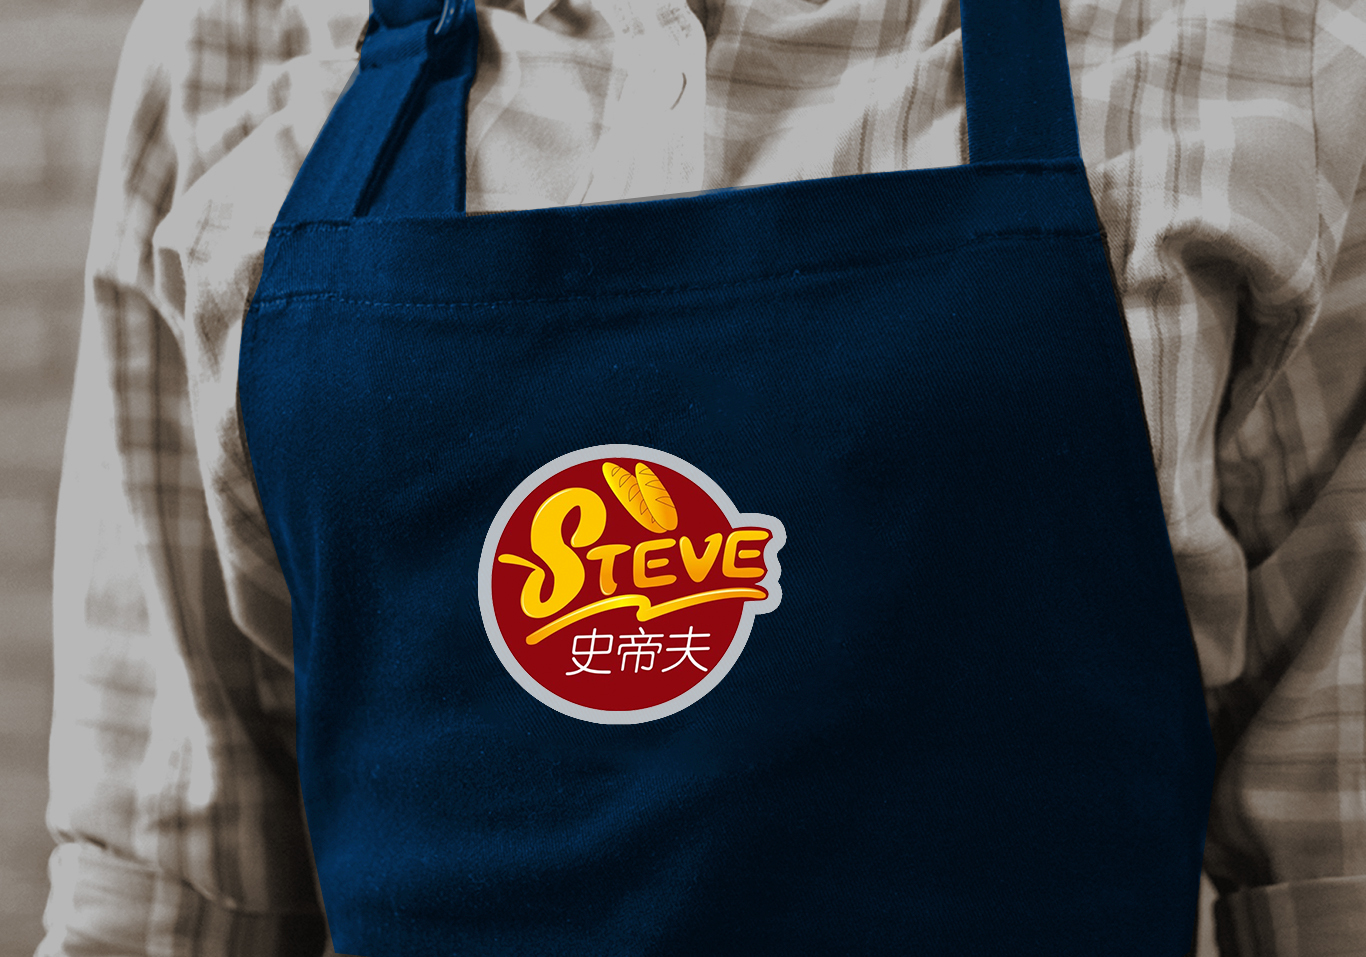 史蒂夫 意大利风情餐厅logo设计图4